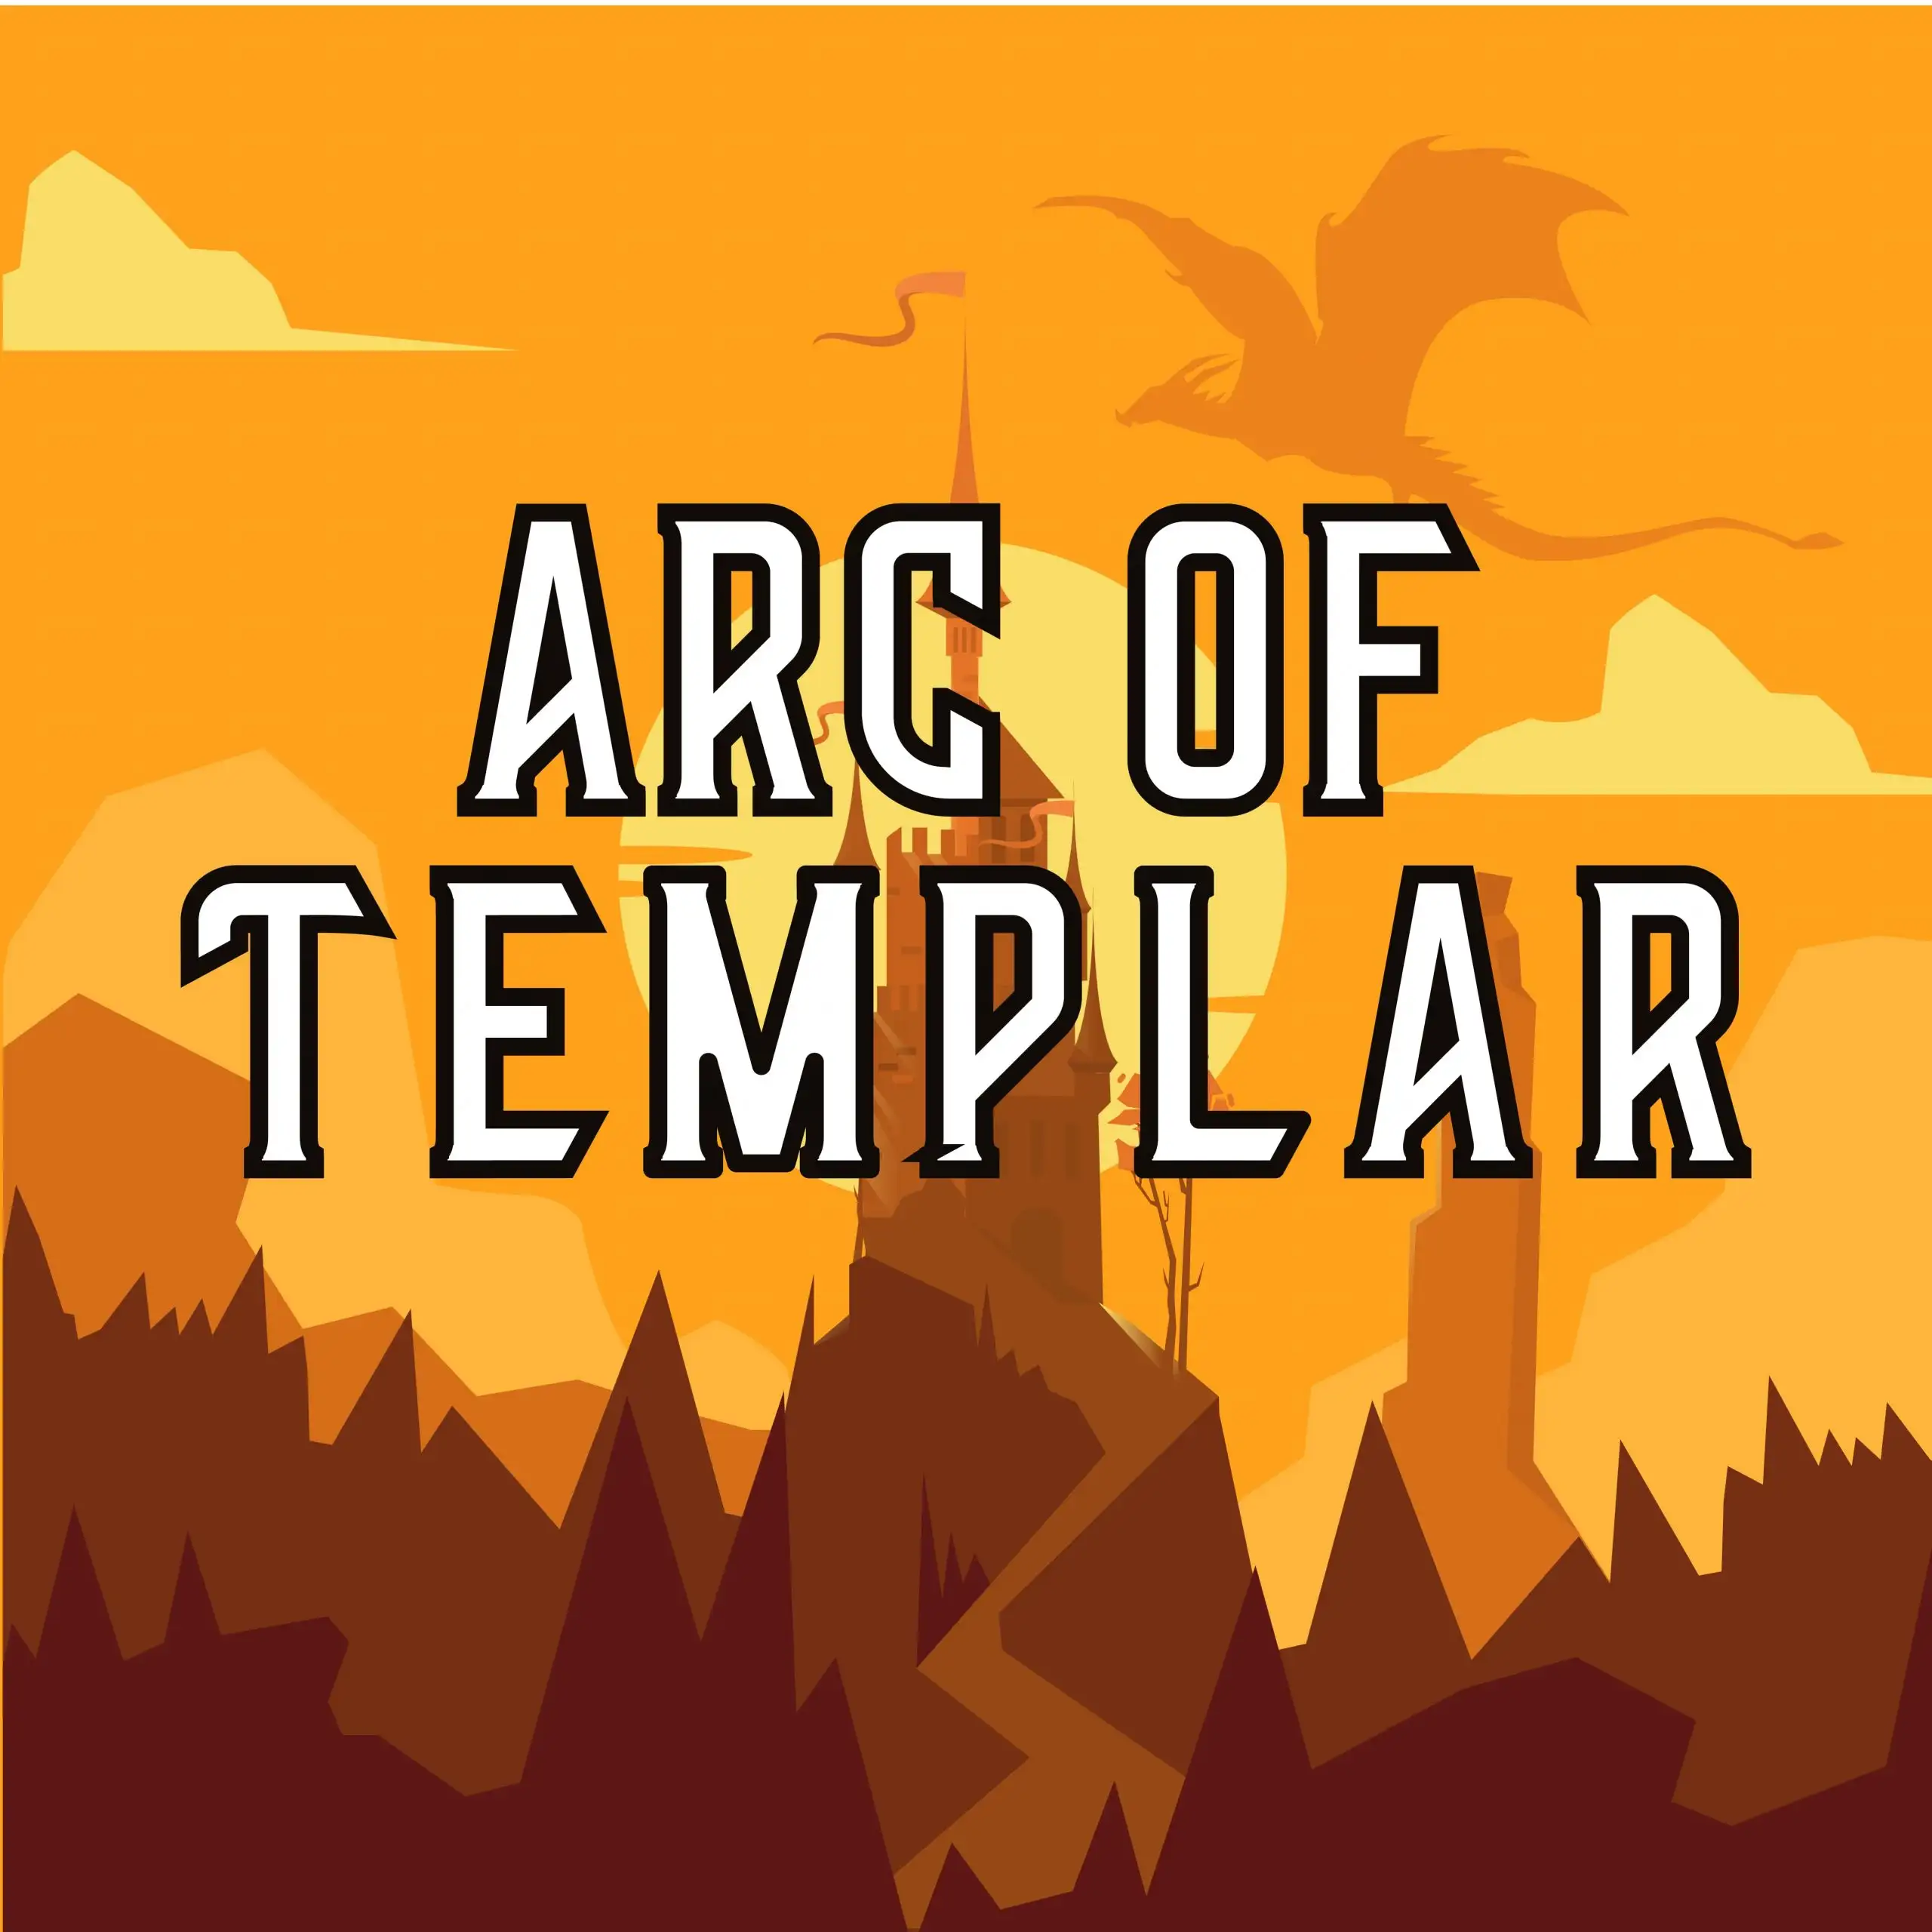 Arc of Templar